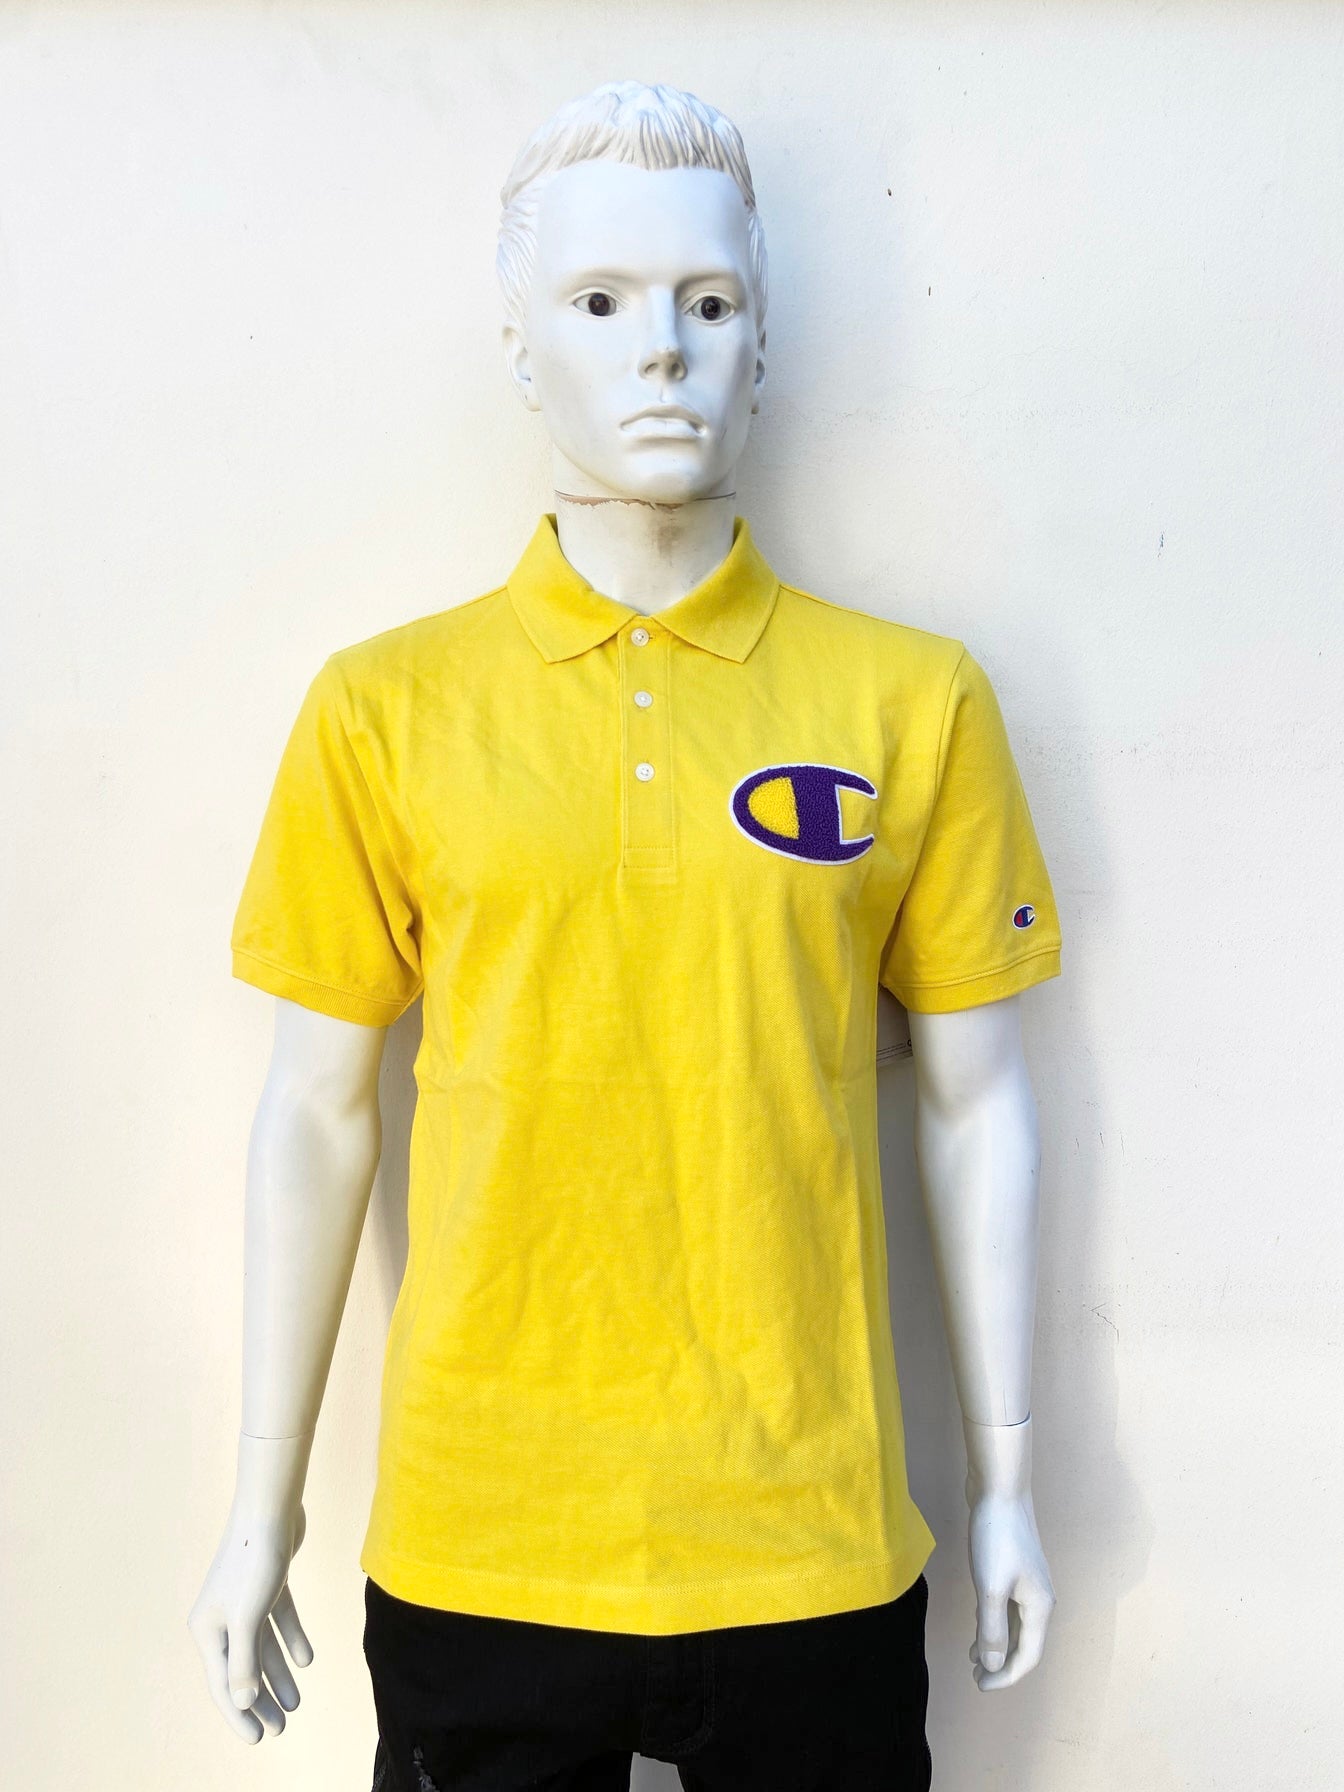 Polocher Champion original de color amarillo con logo CHAMPION al frente en morado y amarillo y letras CHAMPION en color morado en la parte de atrás